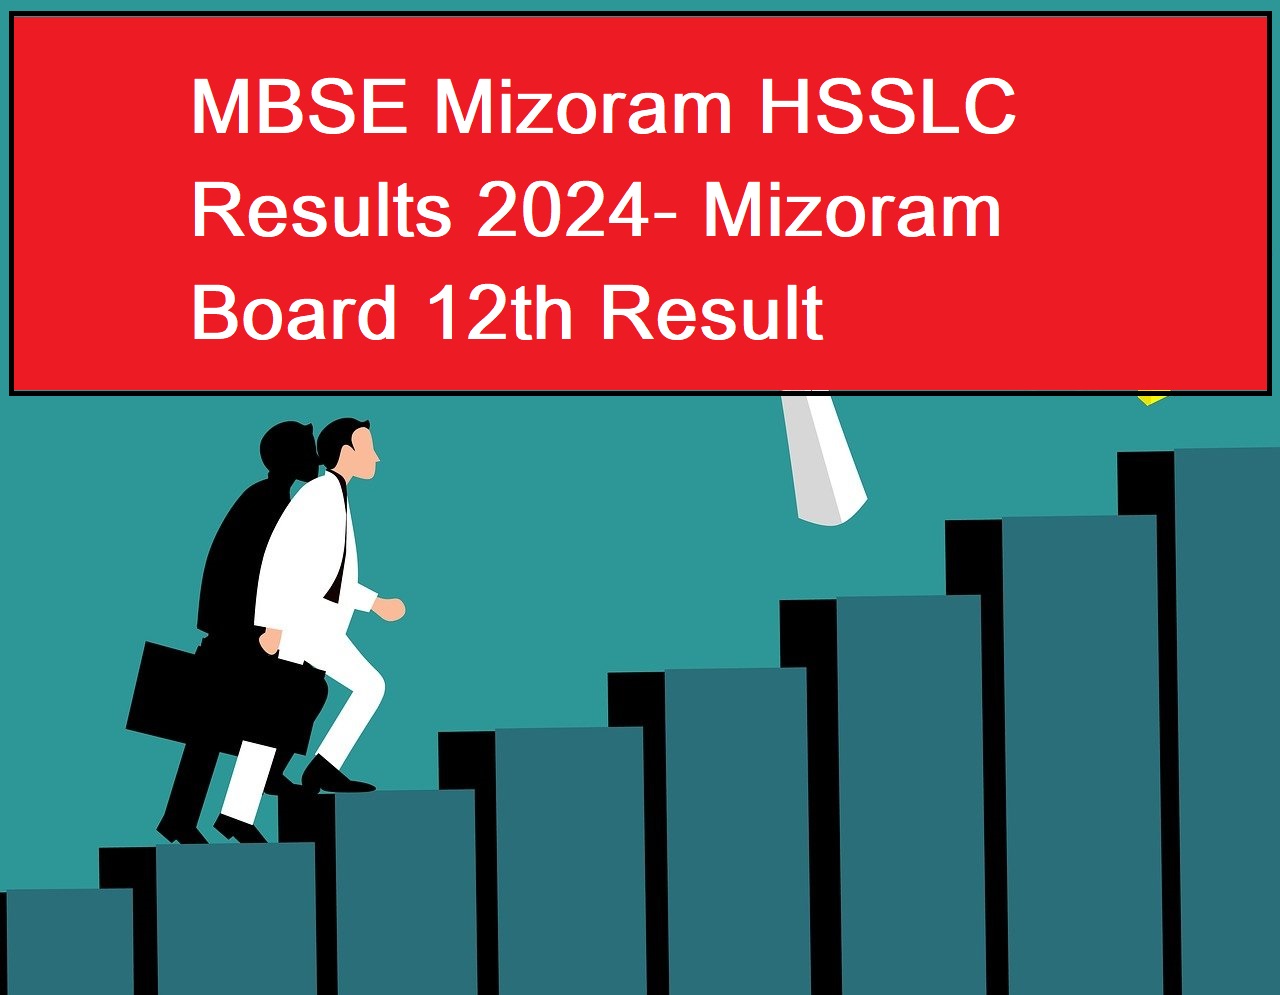 MBSE Mizoram HSSLC Results